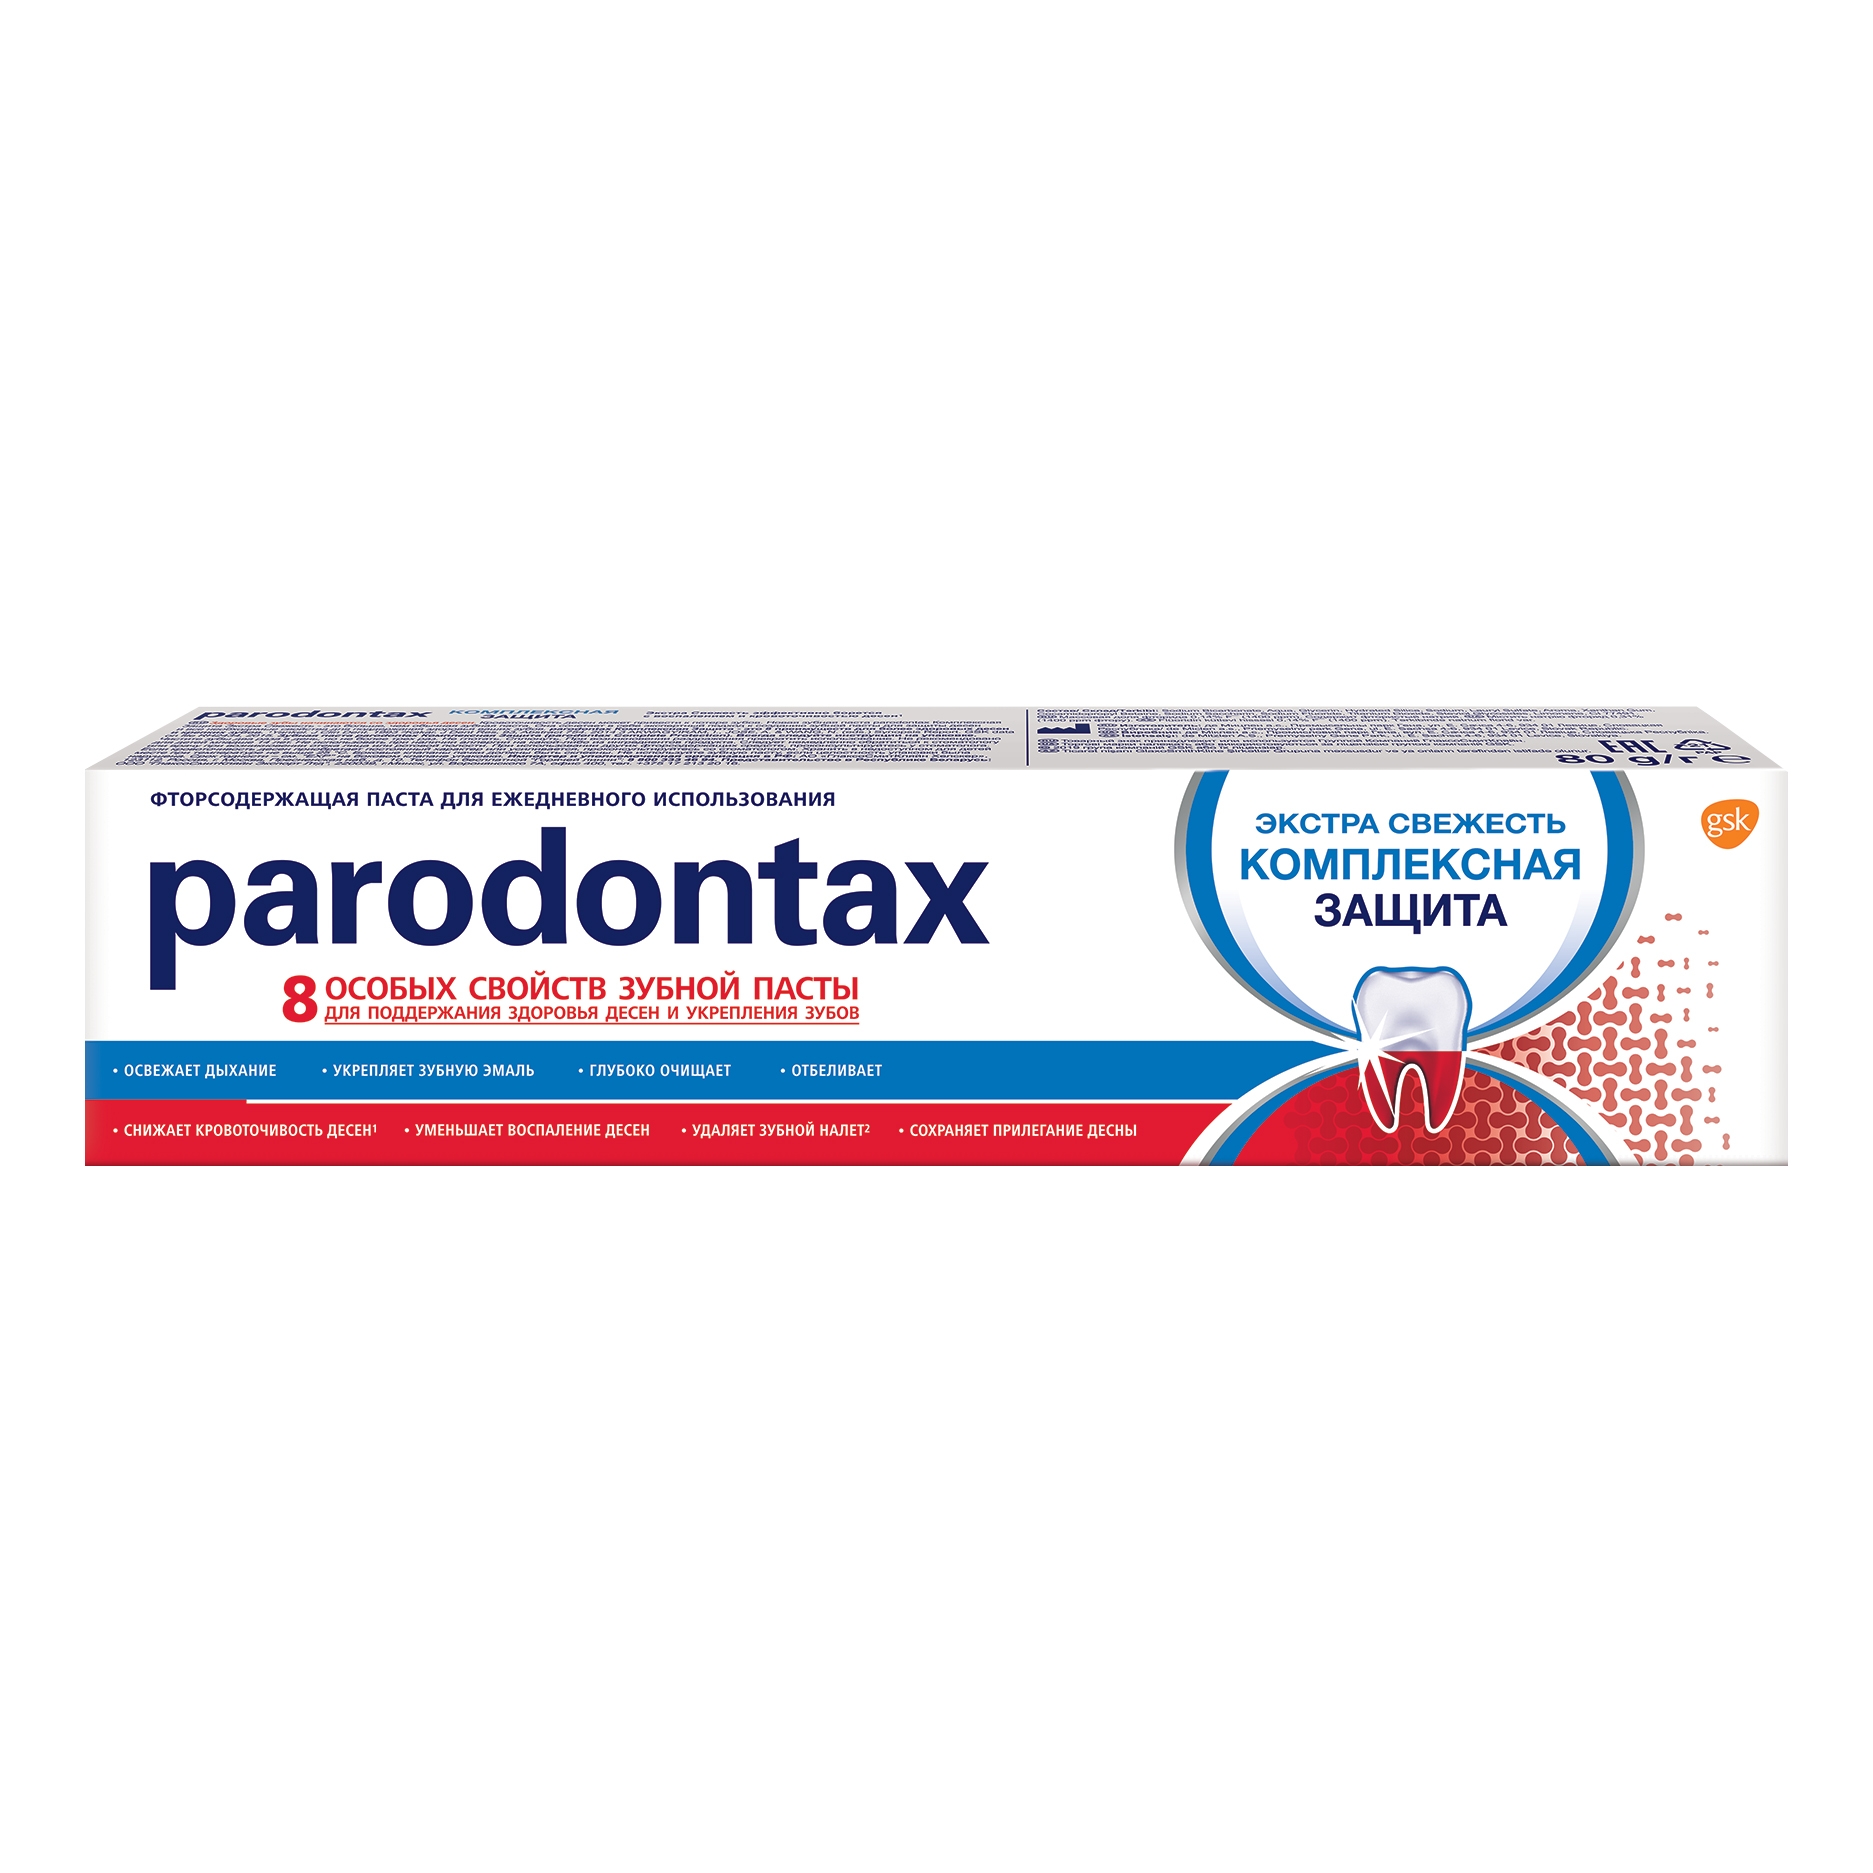 Паста зубная Parodontax Комплексная защита 80 г зубная паста paradontax комплексная защита экстра свежесть 75 мл